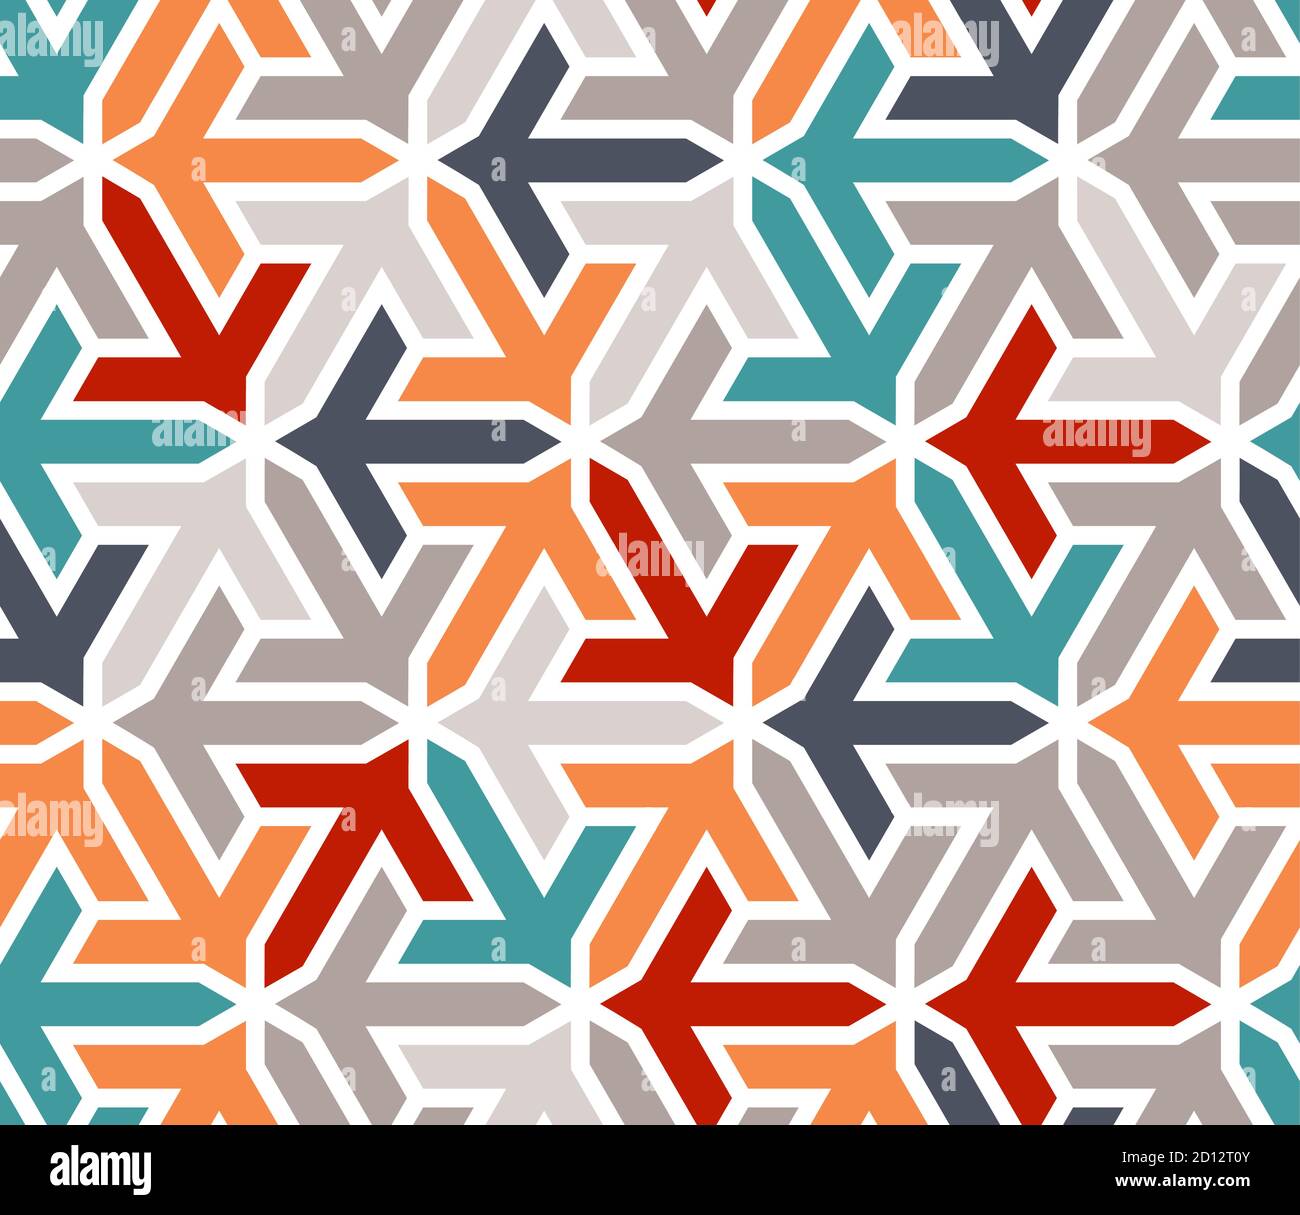 Türkisches geometrisches islamisches Muster mit Pfeilen. Farbe geometrische arabische Vektor-Textur für Tuch, Textil, Verpackung, Tapete Stock Vektor